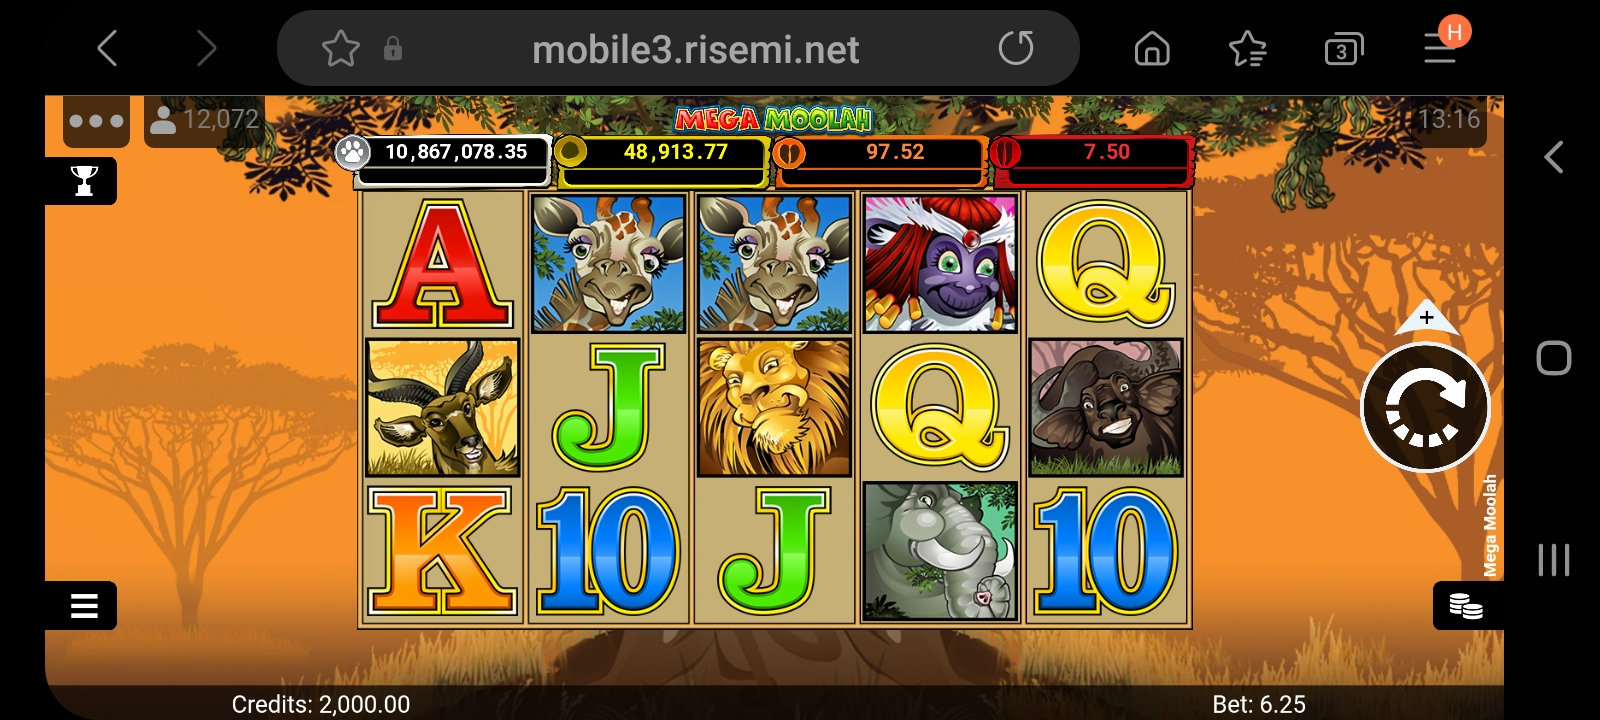 Stake.com casino app screenshot 6